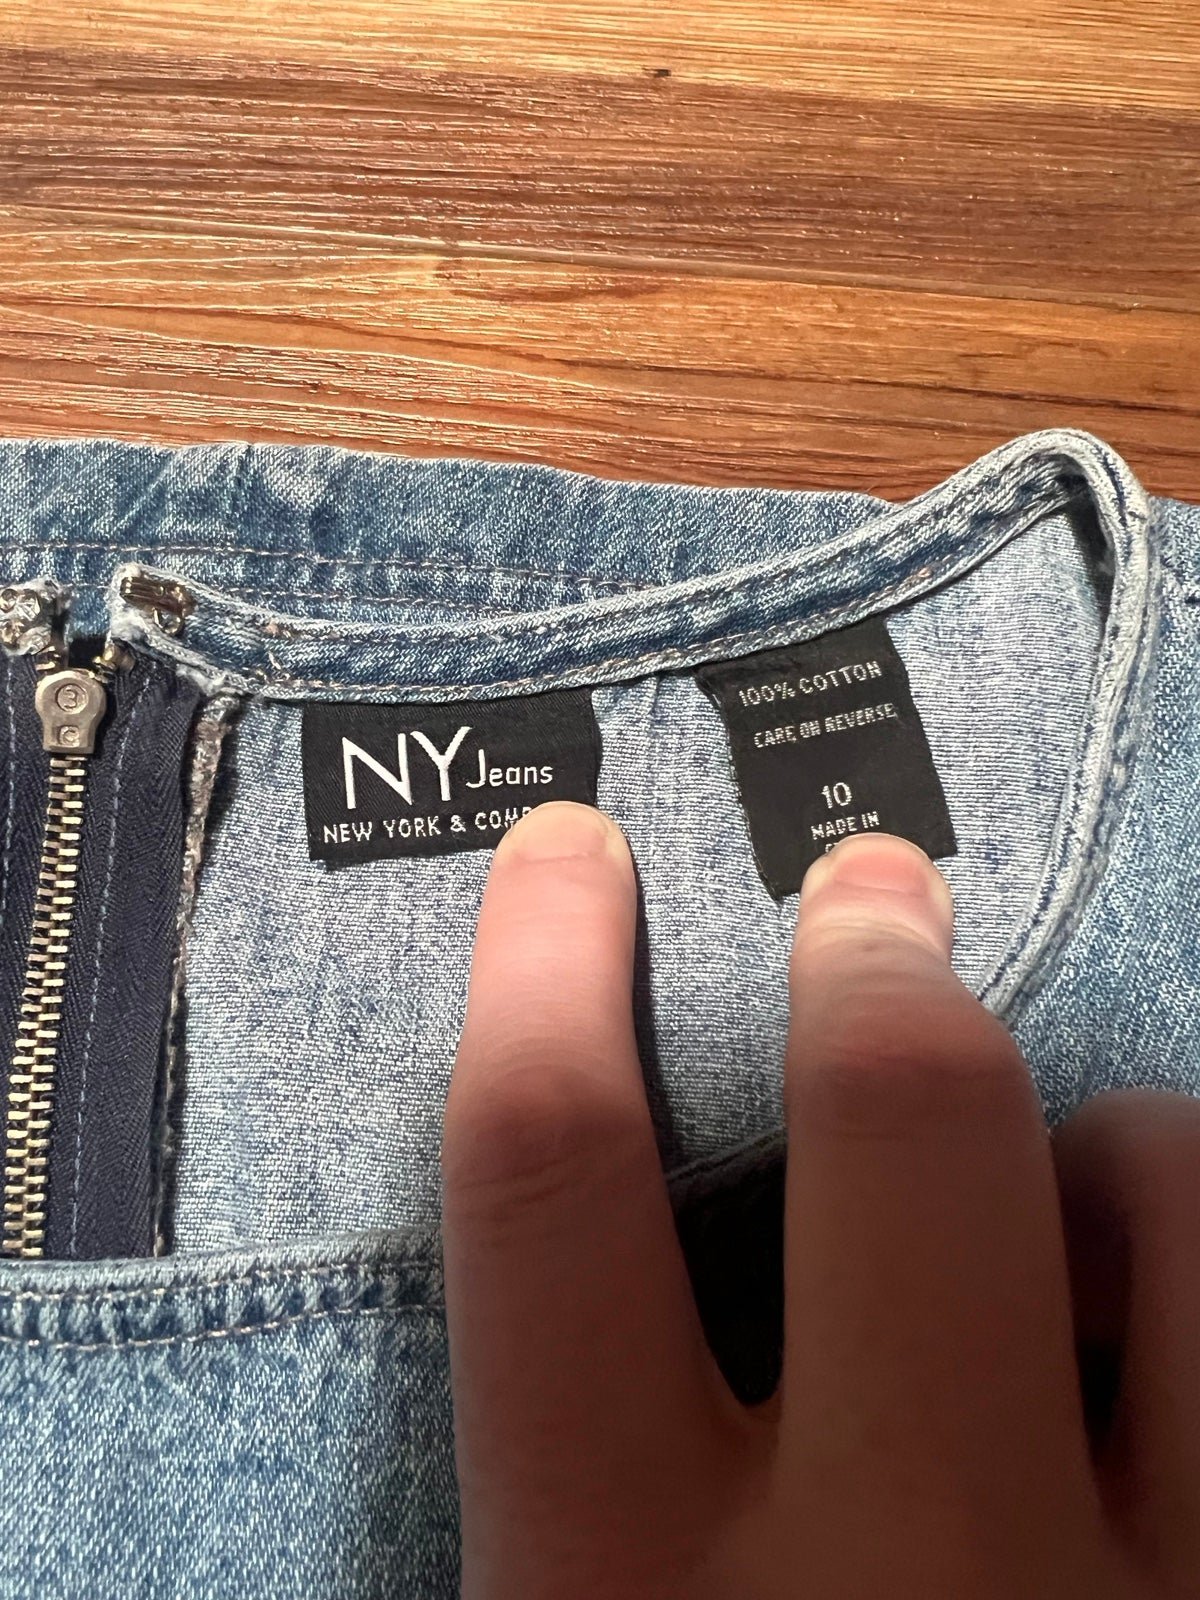 Fashion New York Jeans Denim Dress i37y0XYvM Fashion